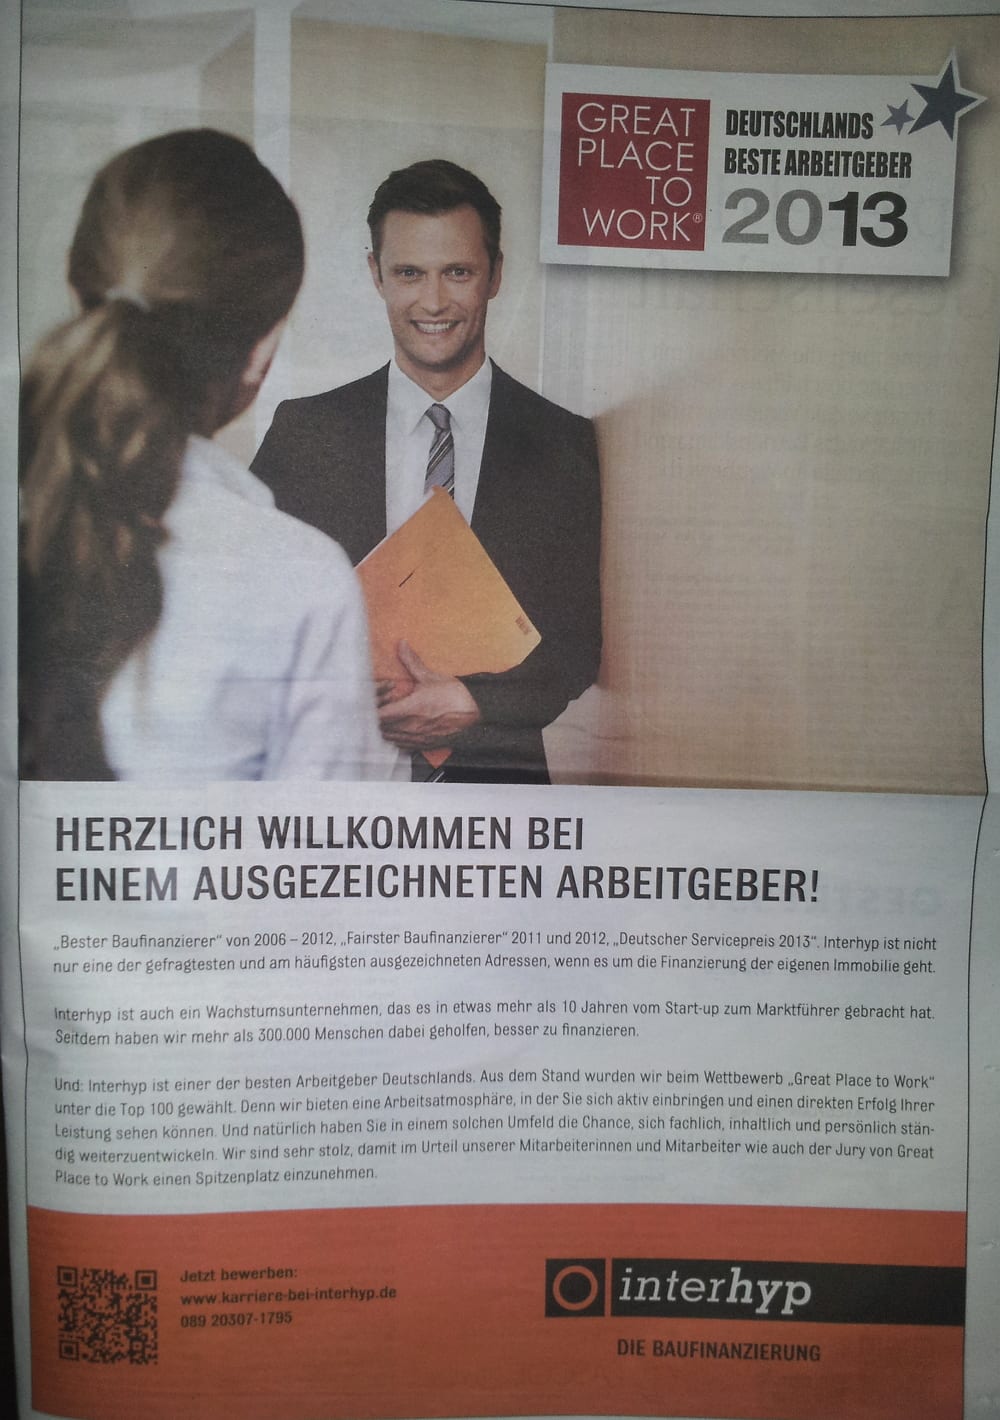 Great Place to Work - Deutschlands bester Arbeitgeber - interhyp Imageanzeige mit QR-Code